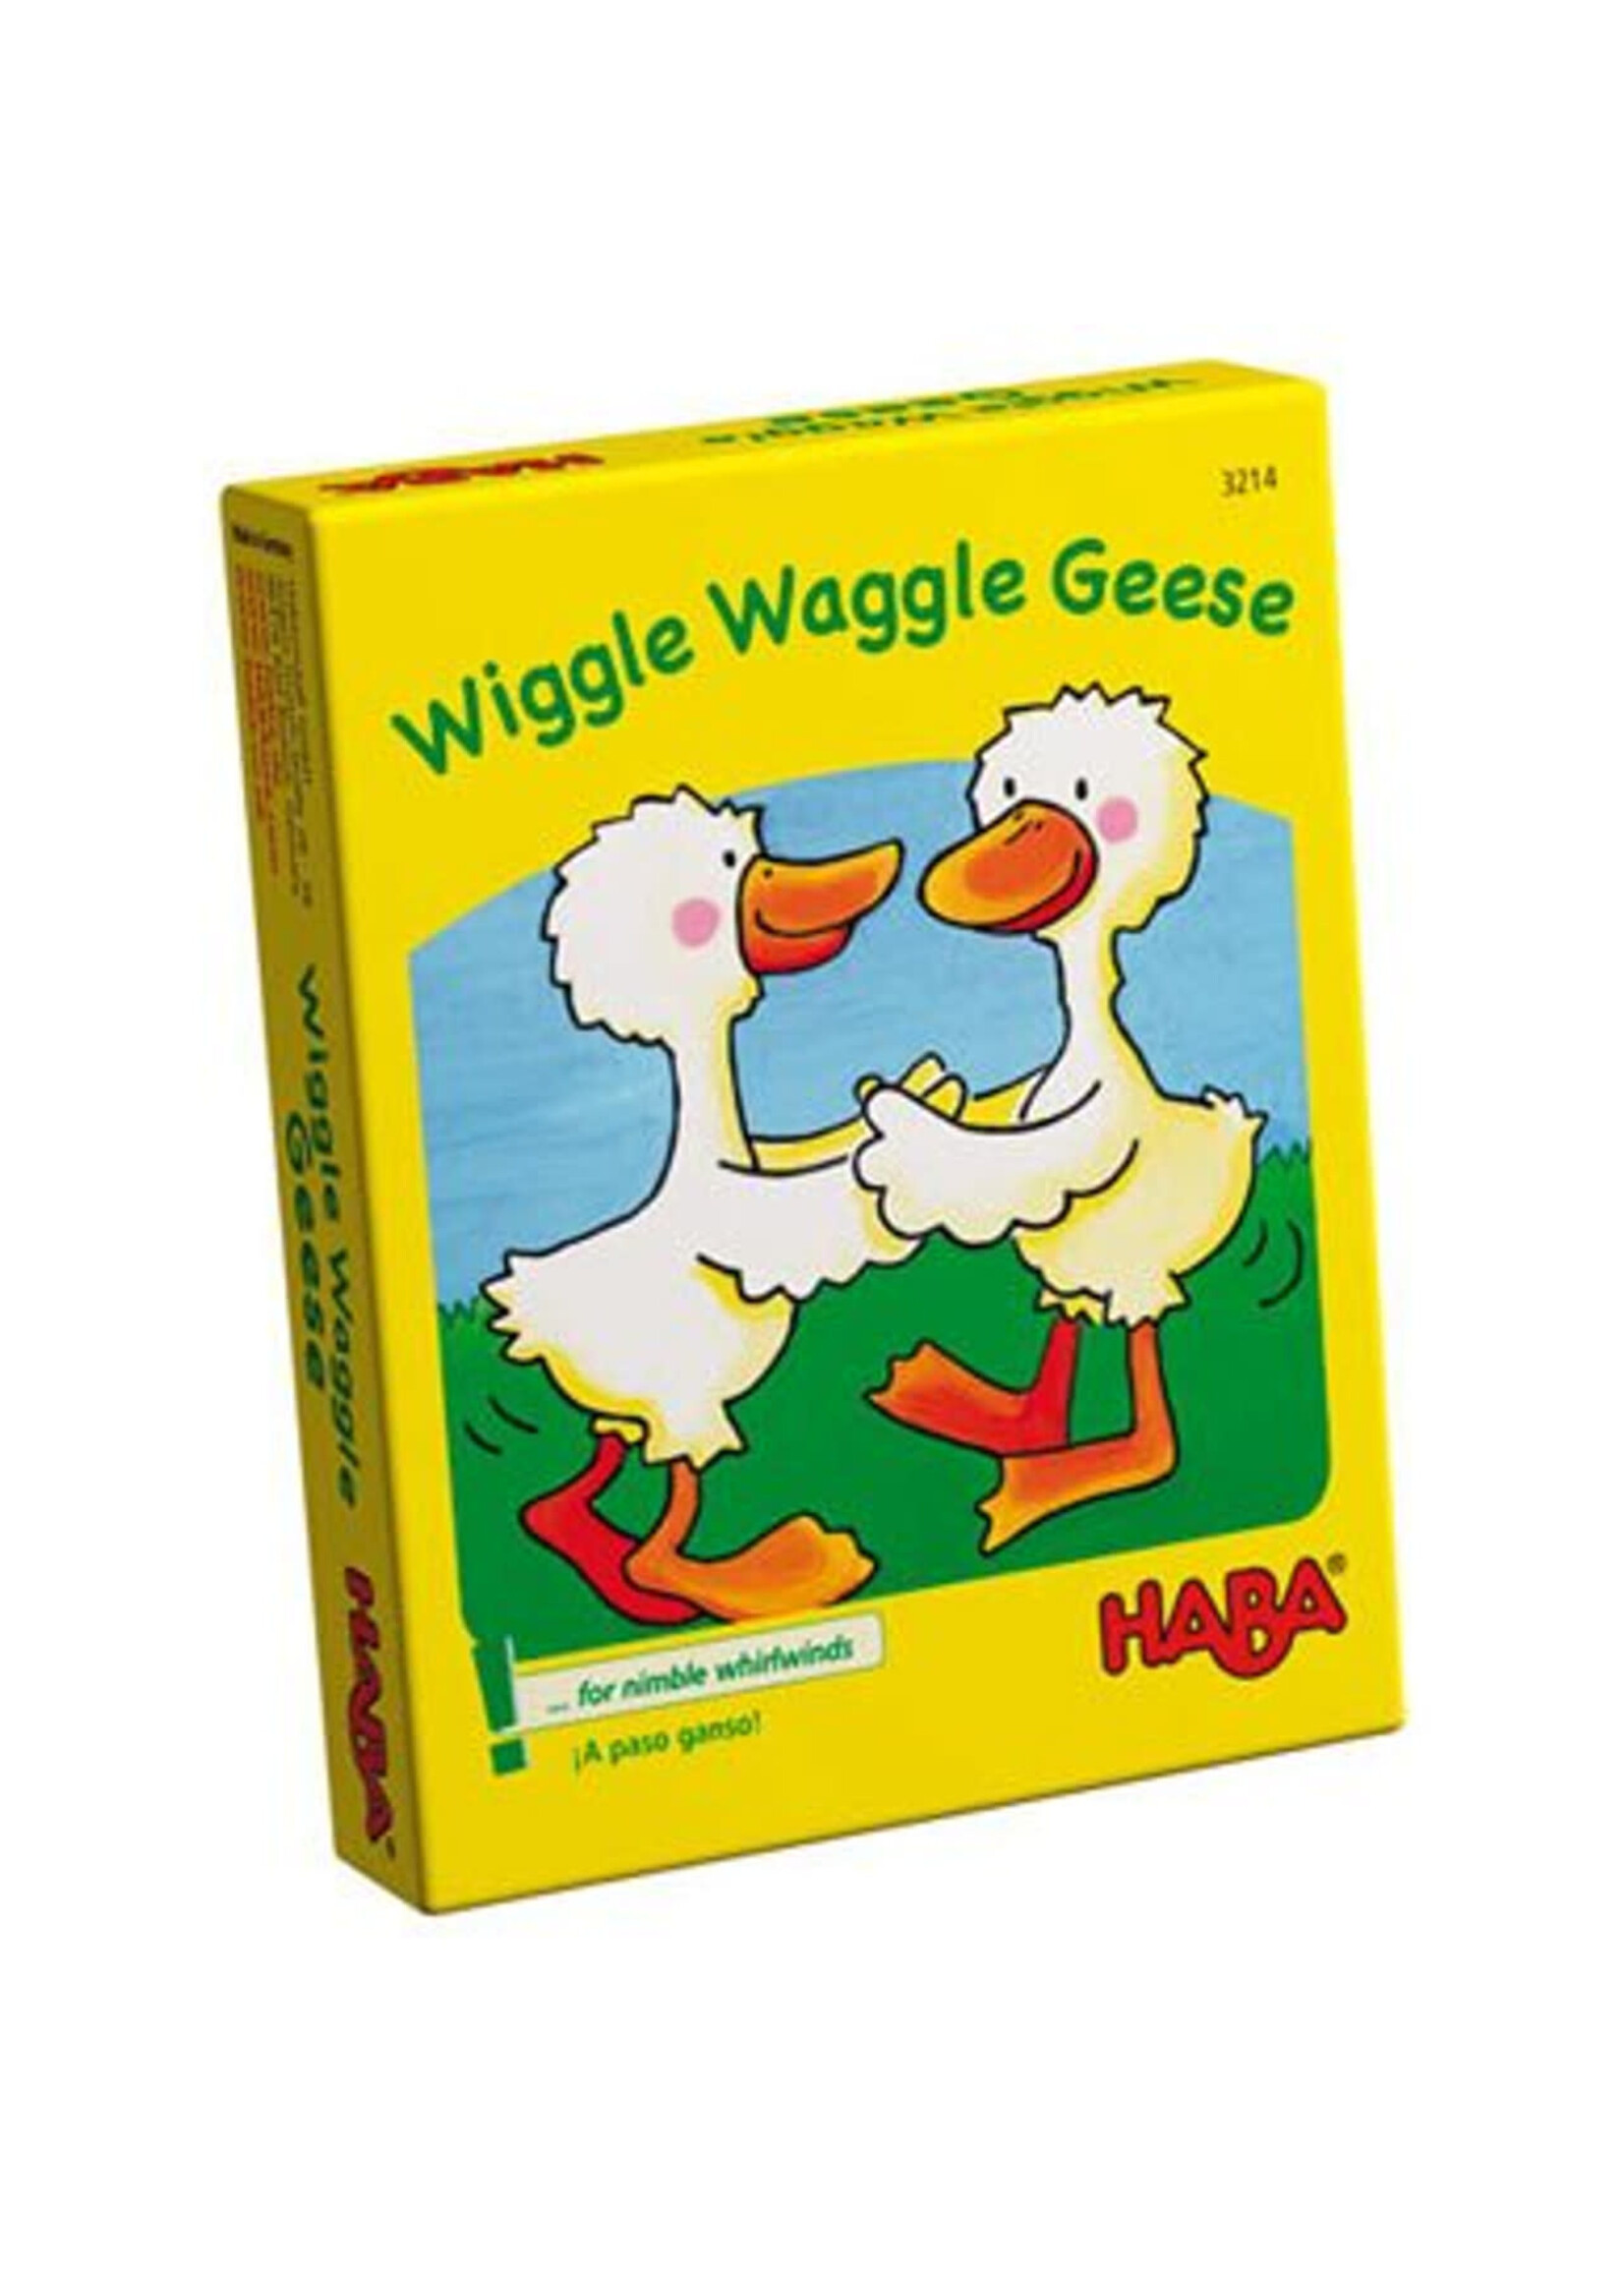 HABA Wiggle Waggle Geese